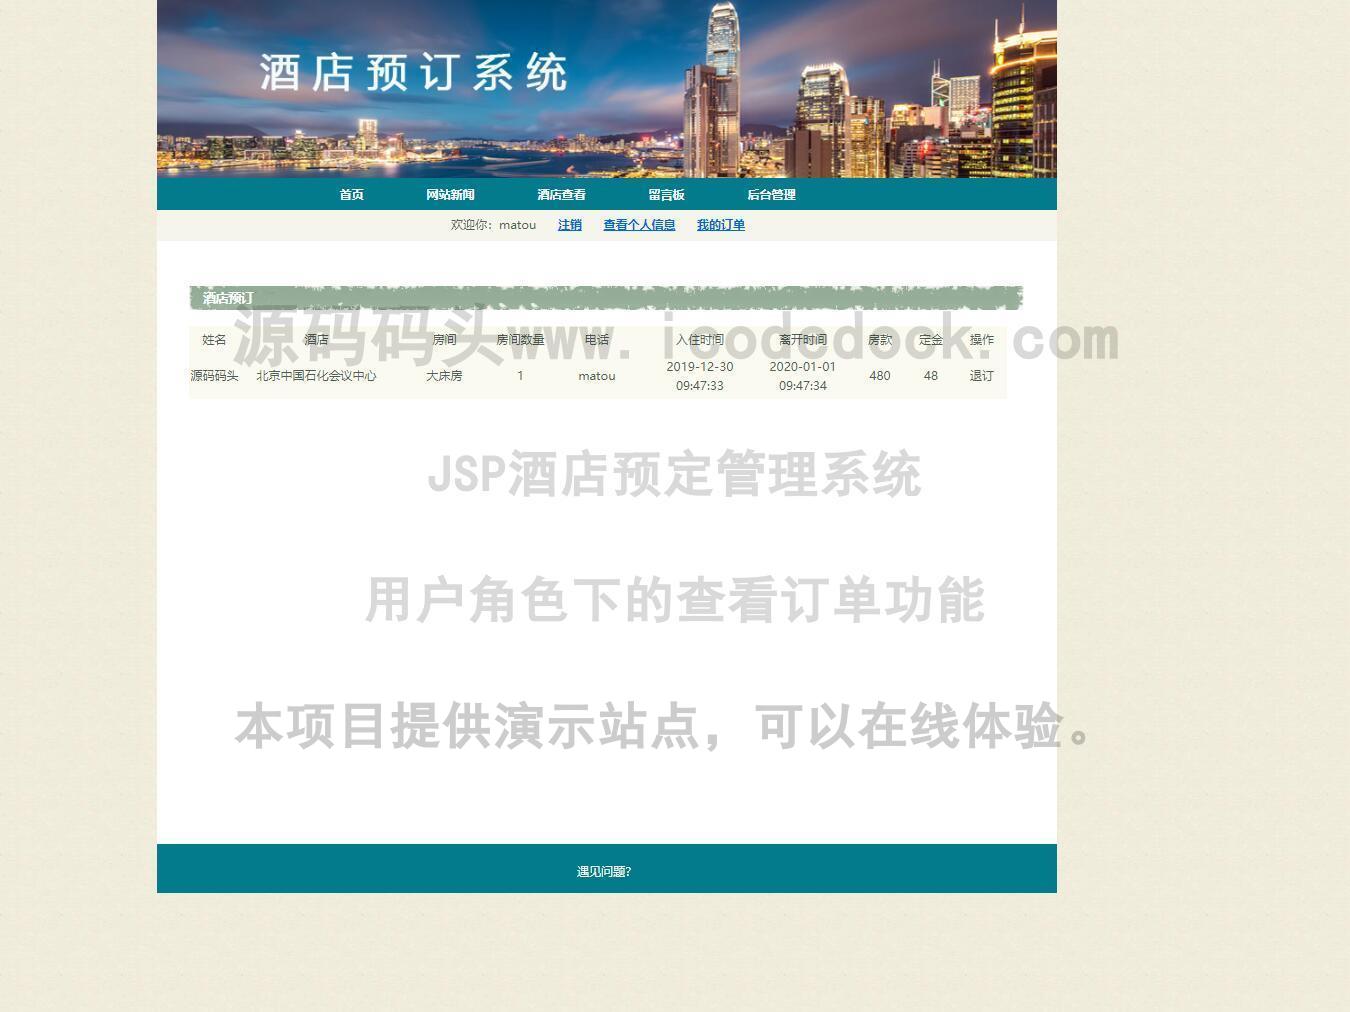 源码码头-JSP酒店预定管理系统-用户角色-查看订单